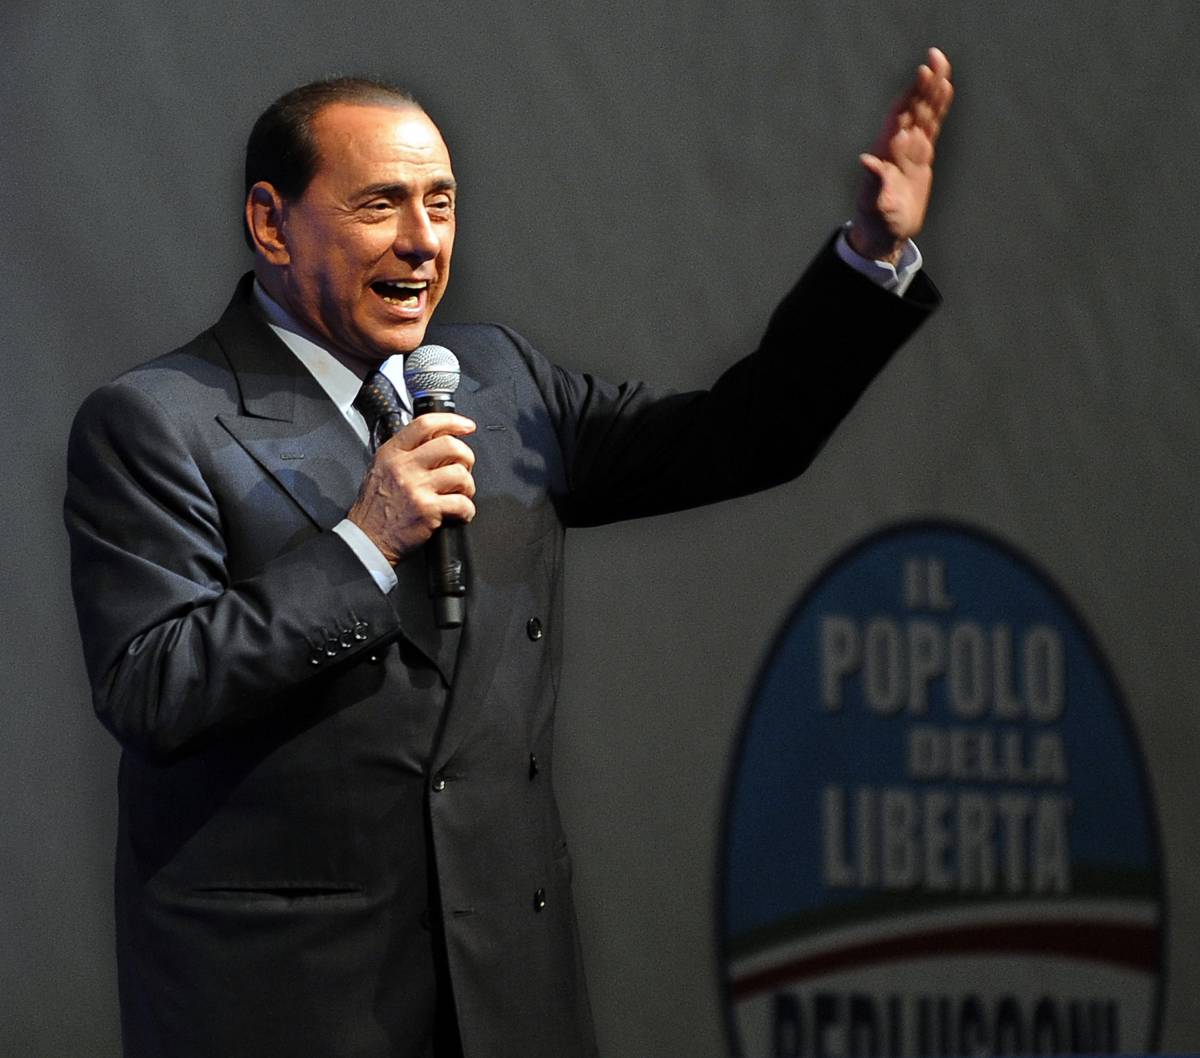 Berlusconi: "Crisi è da irresponsabili" 
Fini: "Vuole comandare e perde pezzi"